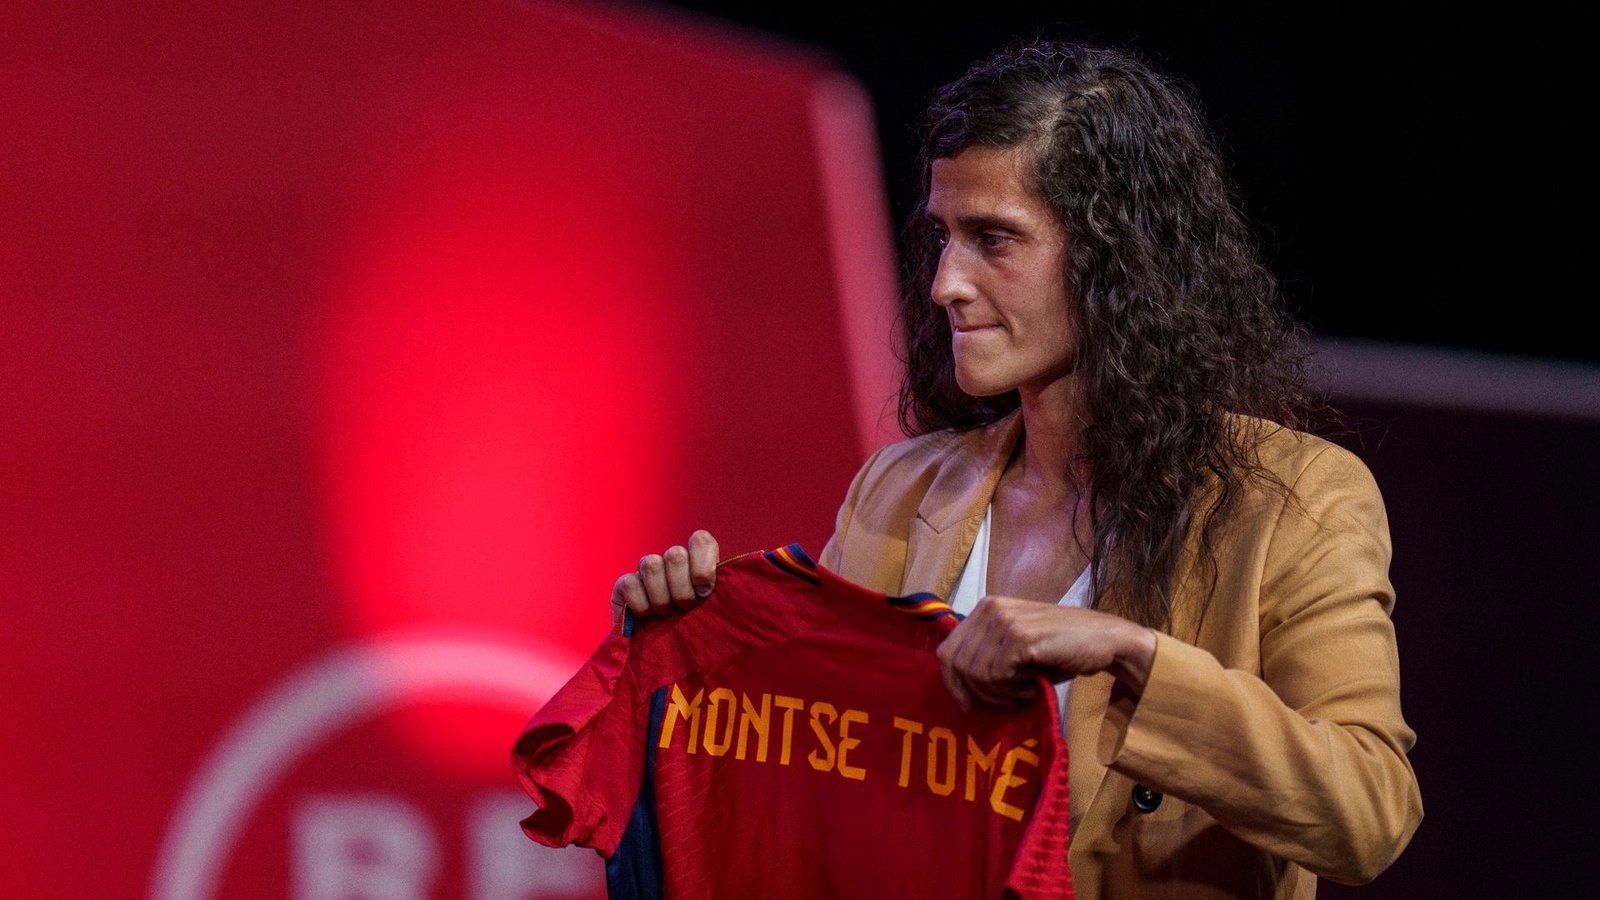 Montse Tomé ist neue Trainerin der spanischen Frauen-Nationalmannschaft.Foto: Manu Fernandez/AP/dpa